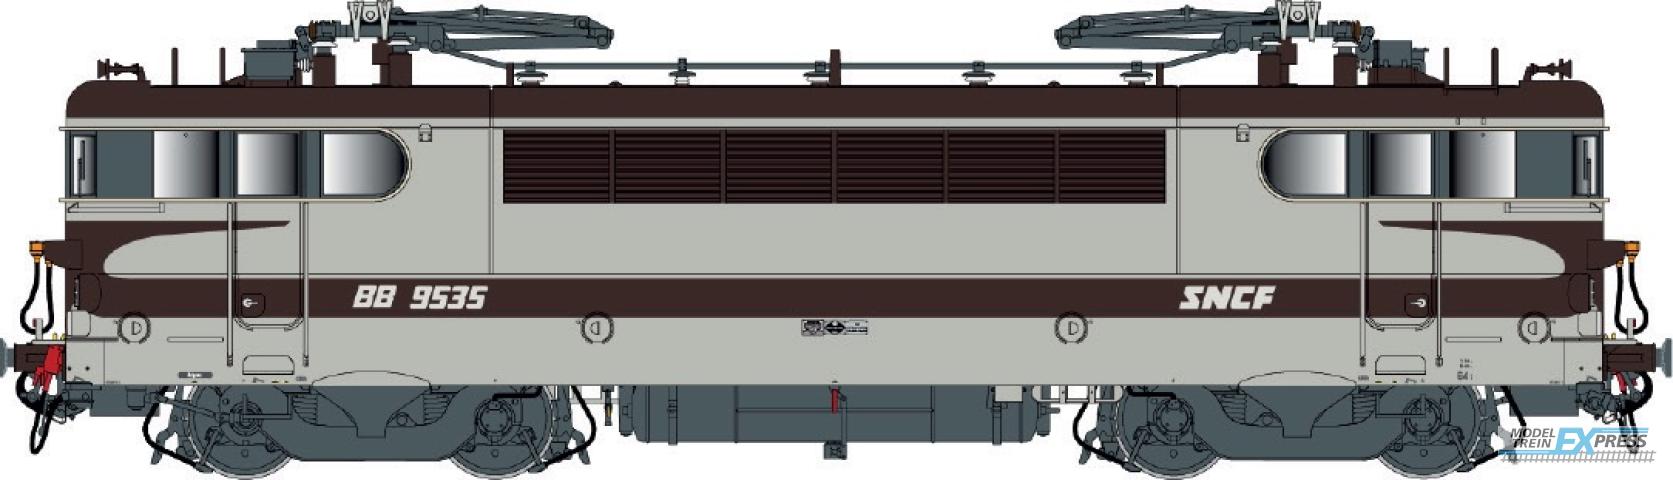 LS Models 10226S BB 9400, grijs/bruin/oranje, Arzens, vet logo  /  Ep. IV-V  /  SNCF  /  HO  /  DC SOUND  /  1 P.